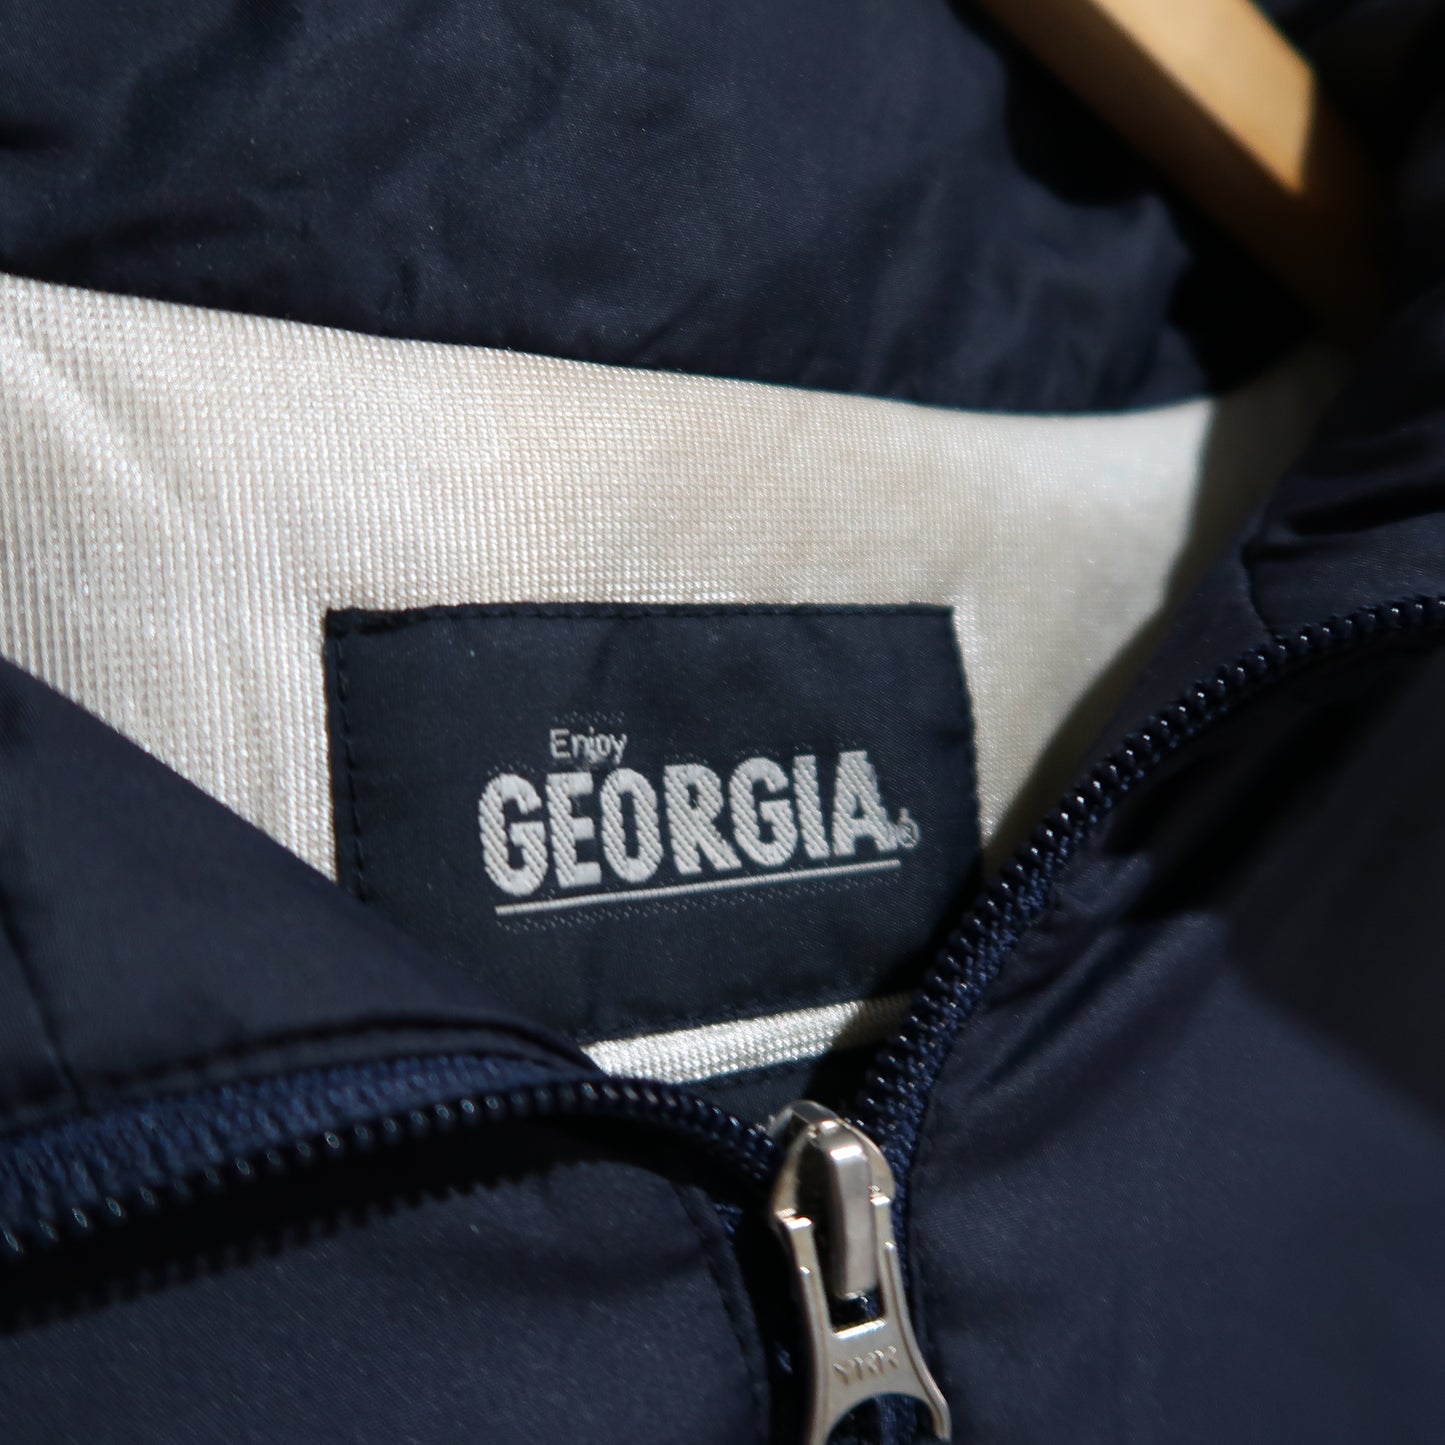 Georgia Coffee Jacket/Vest